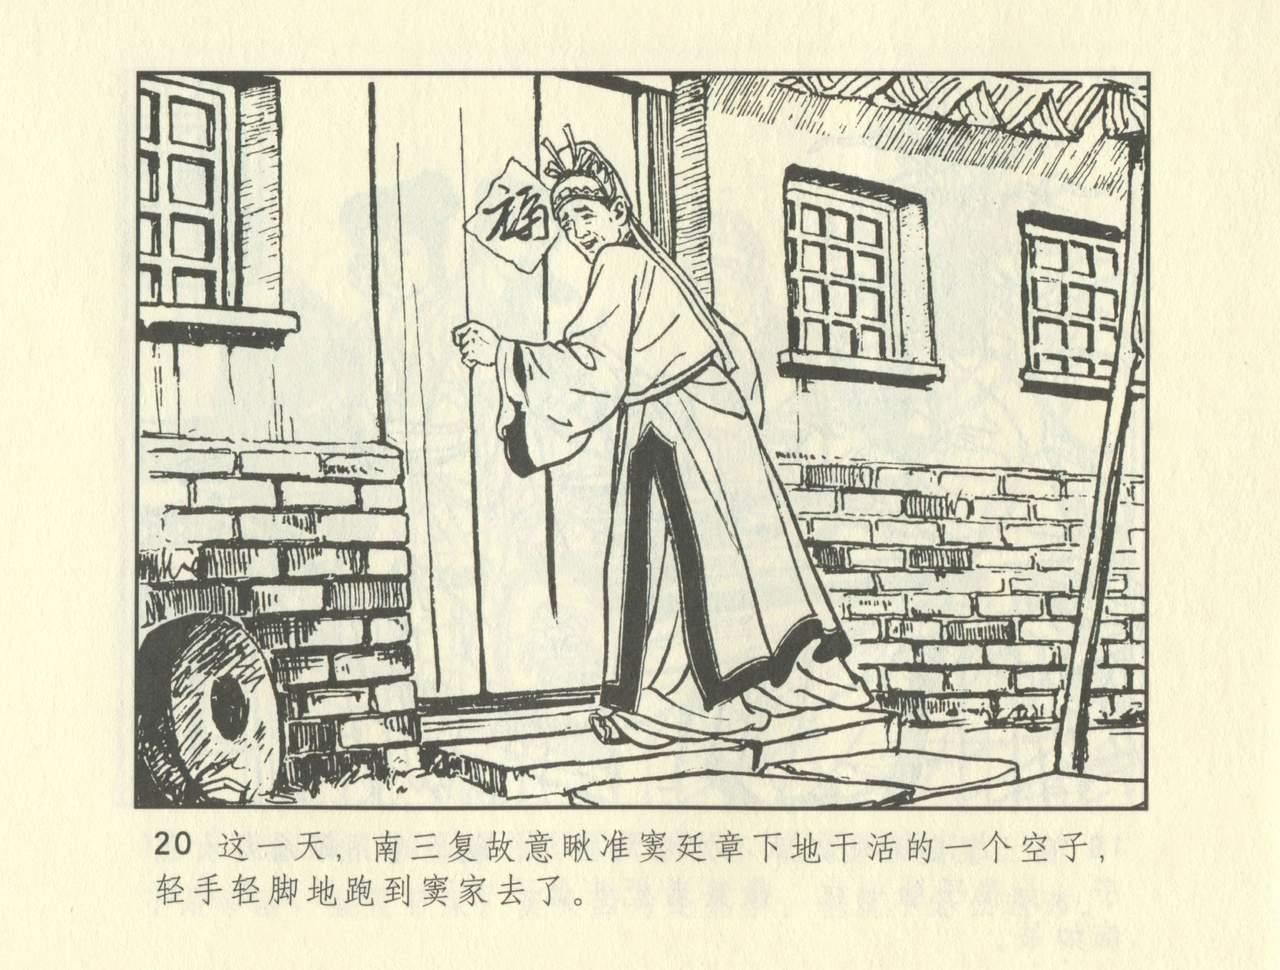 聊斋志异 张玮等绘 天津人民美术出版社 卷二十一 ~ 三十 229